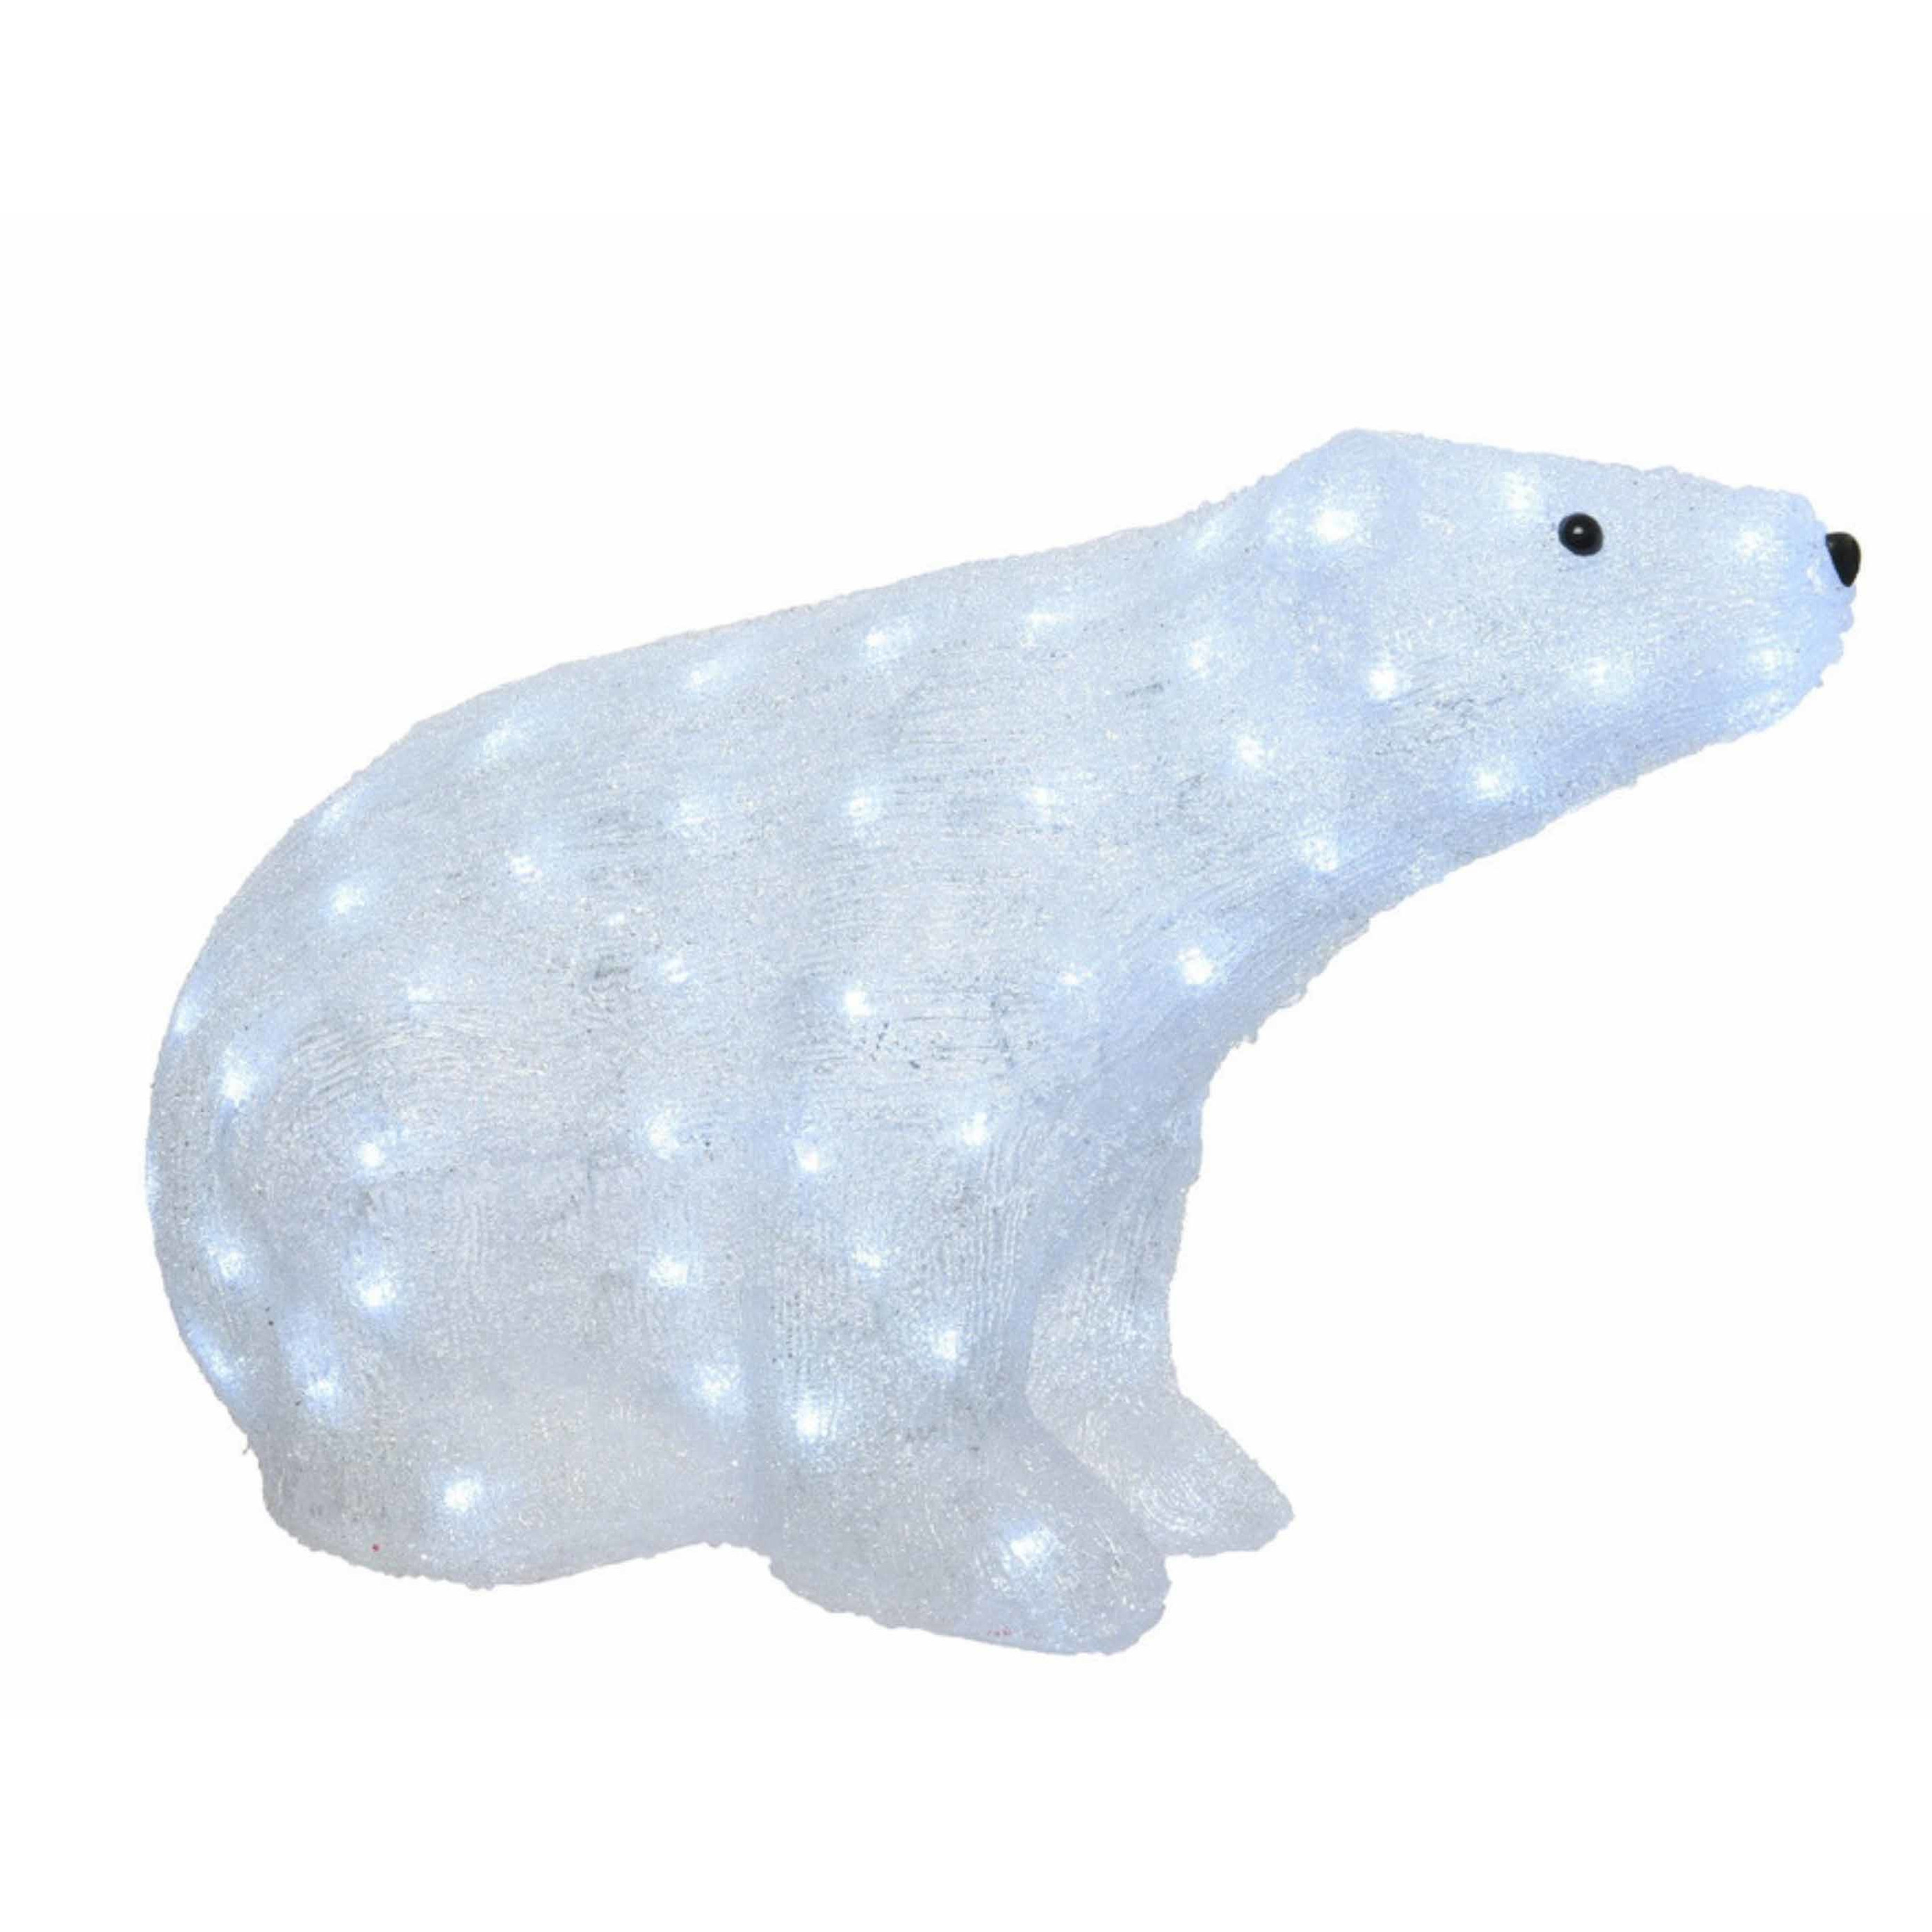 Afbeelding 1x LED acryl figuren ijsbeer 60 x 40 cm door Animals Giftshop